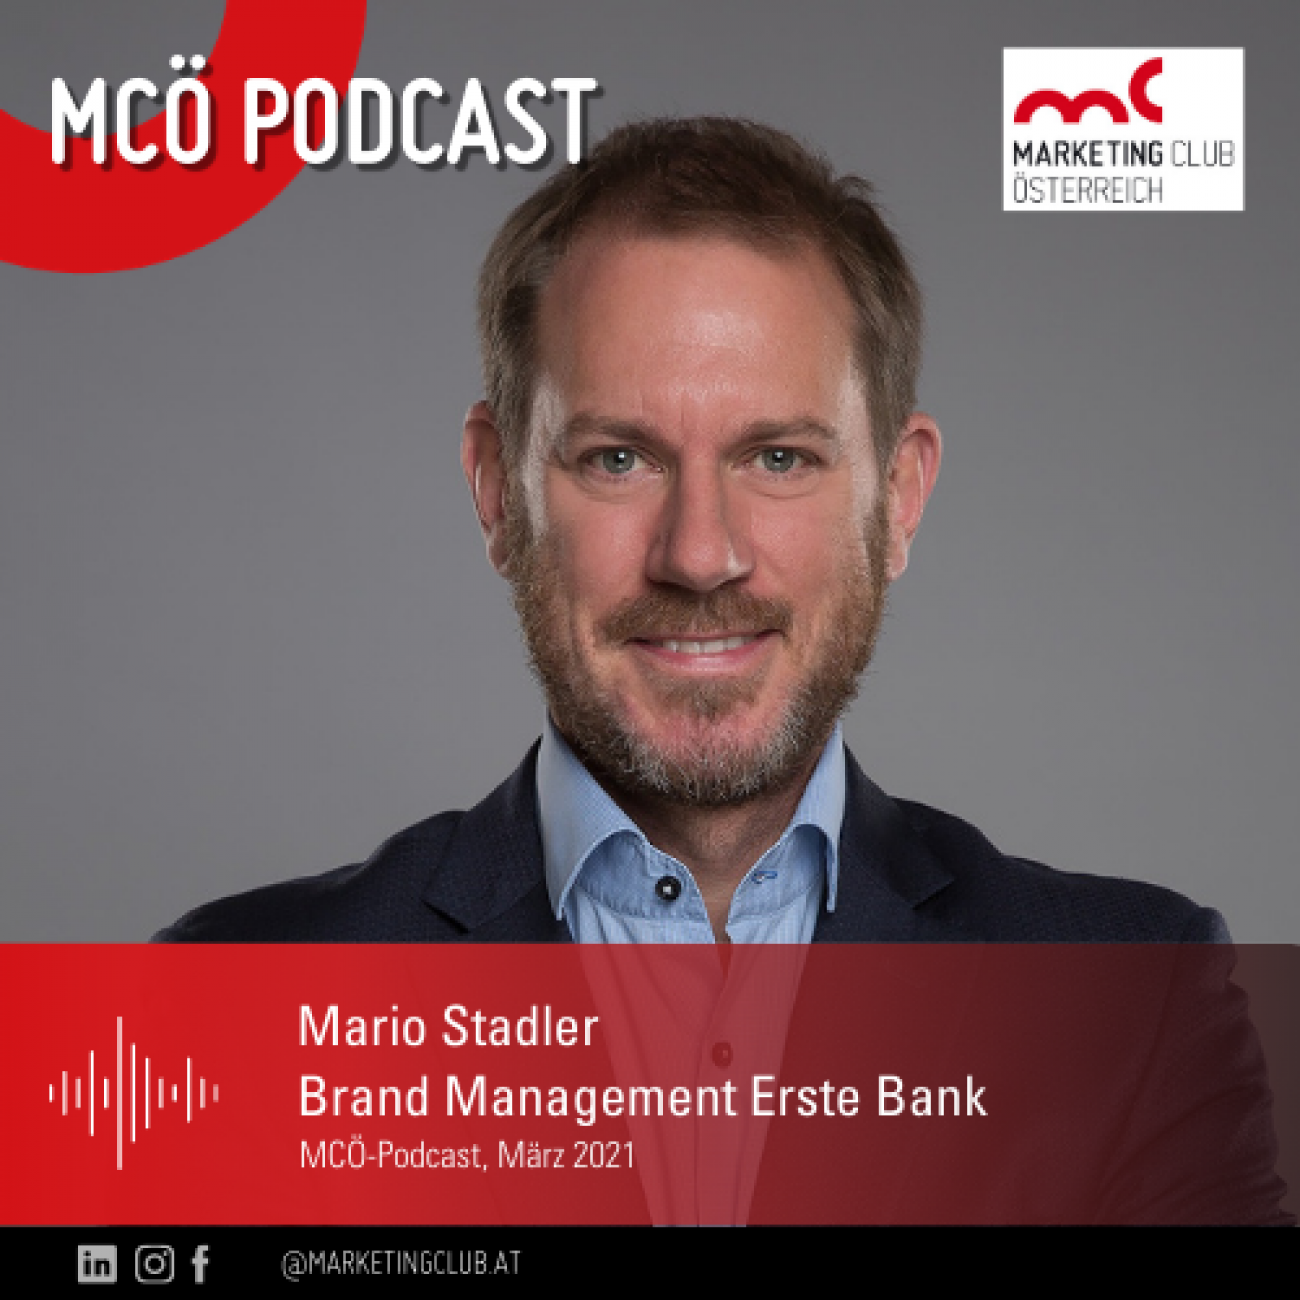 Podcast Mario Stadler Erste Bank